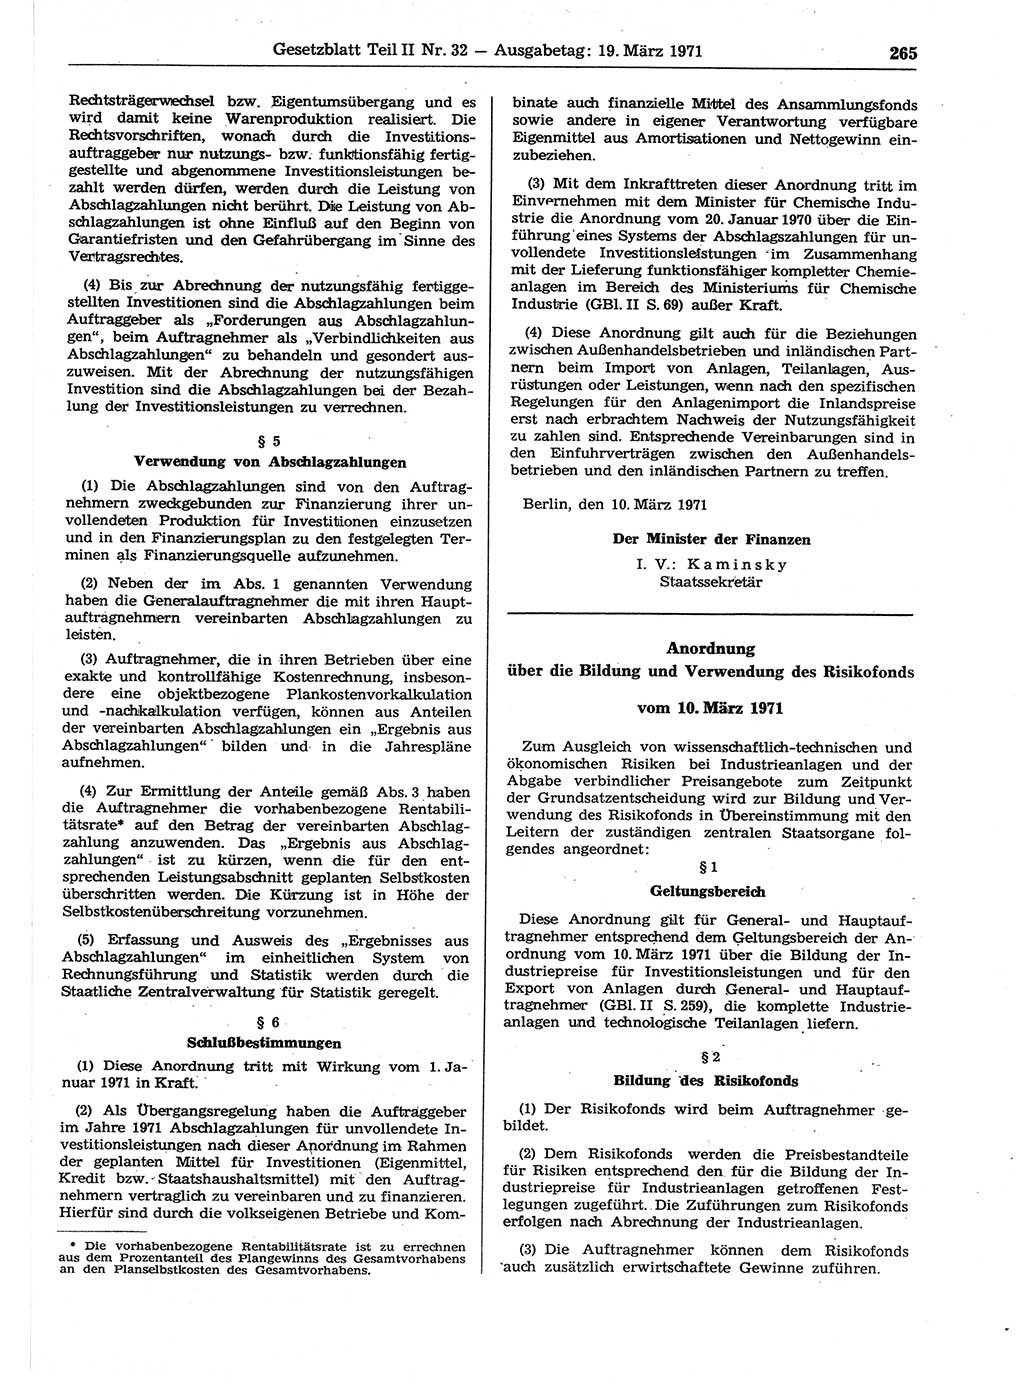 Gesetzblatt (GBl.) der Deutschen Demokratischen Republik (DDR) Teil ⅠⅠ 1971, Seite 265 (GBl. DDR ⅠⅠ 1971, S. 265)